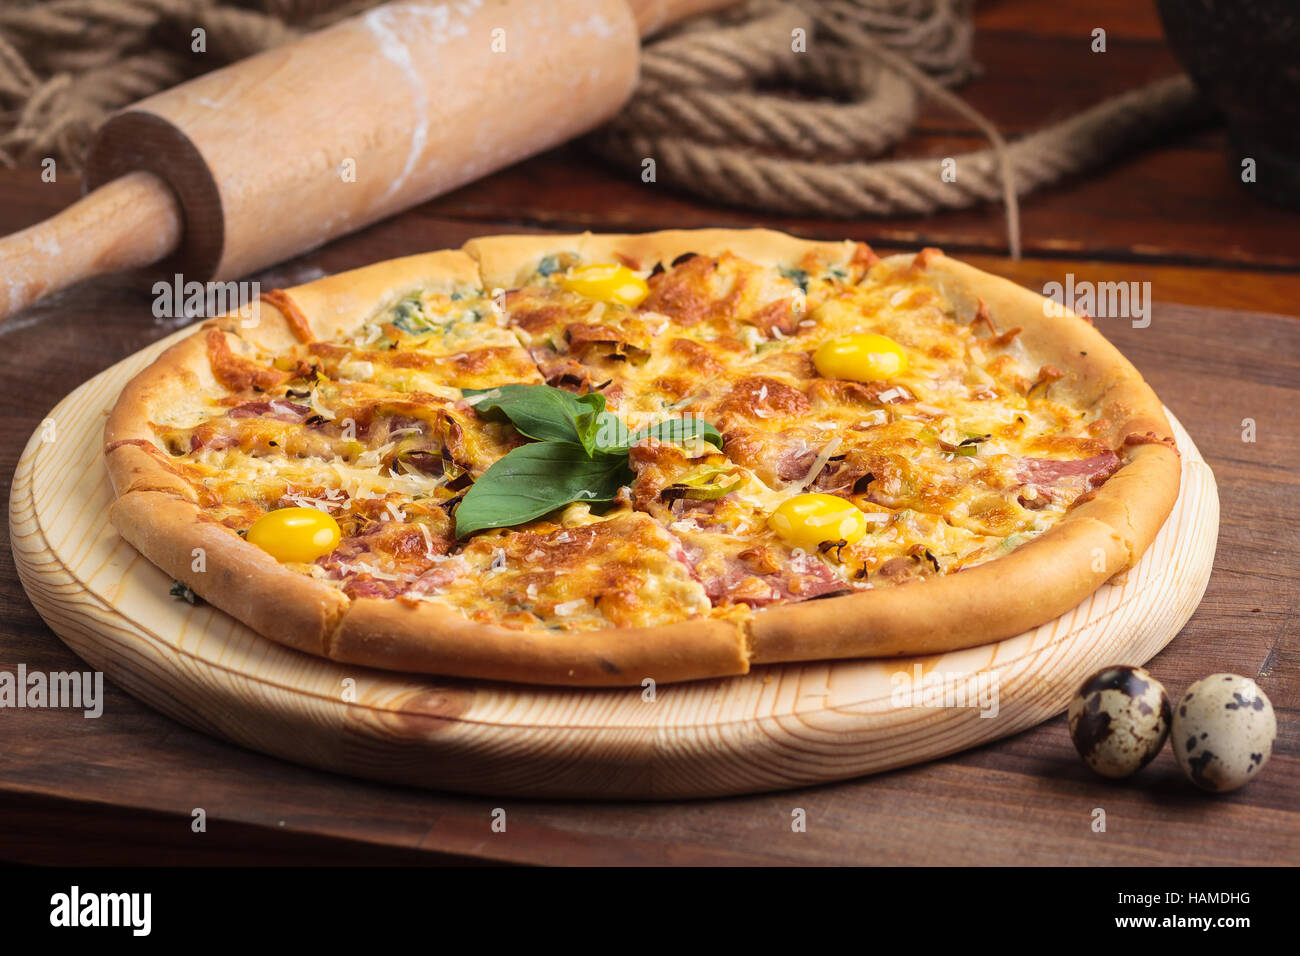 Concetto: ristorante menu, mangiare sano, fatti in casa, golosi, golosità. Pizza carbonara su legno tabella vintage con ingredienti. Foto Stock